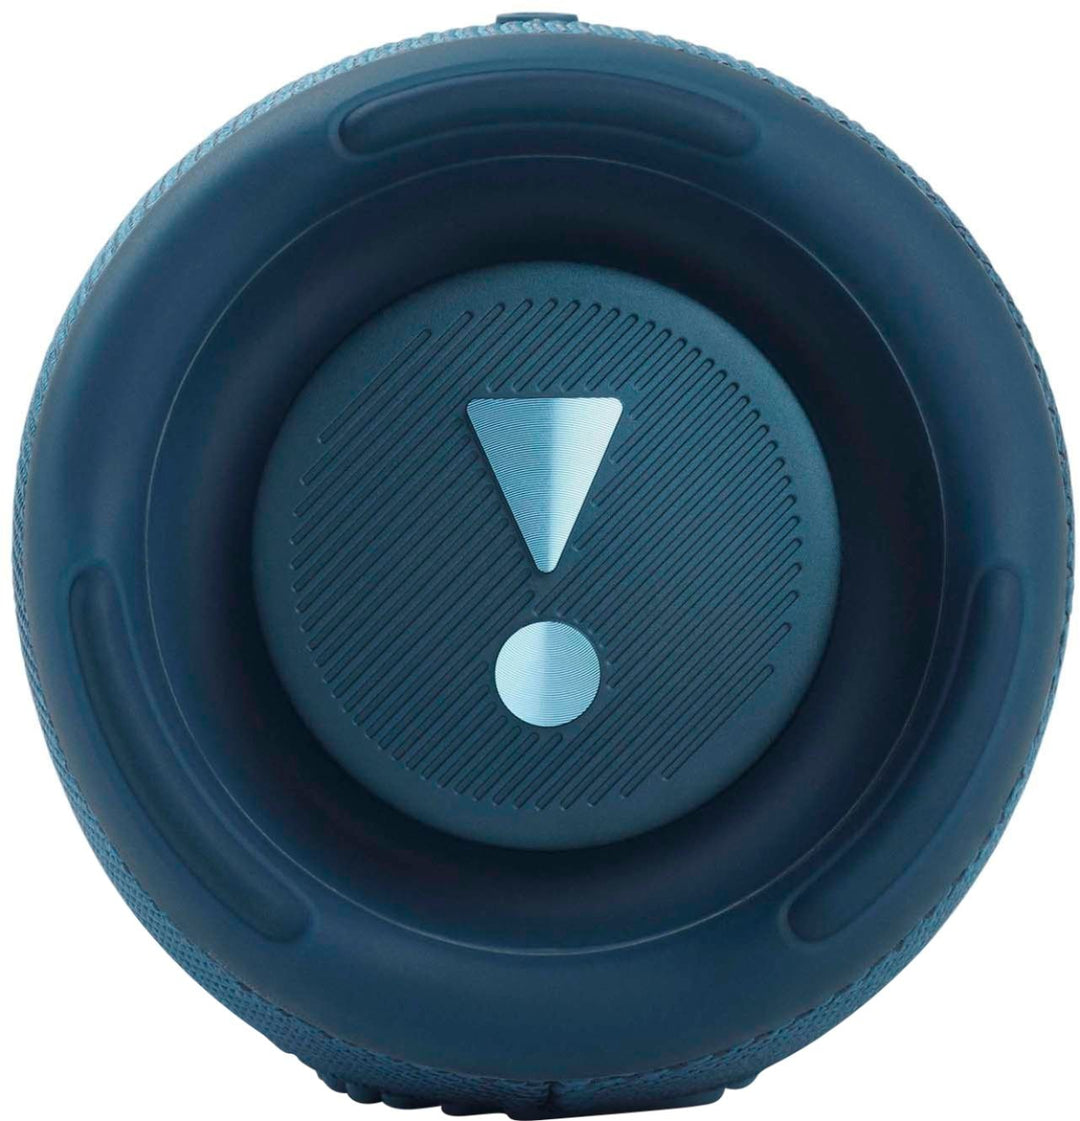 JBL - CHARGE5 Portable Waterproof Speaker with Powerbank - Blue_4